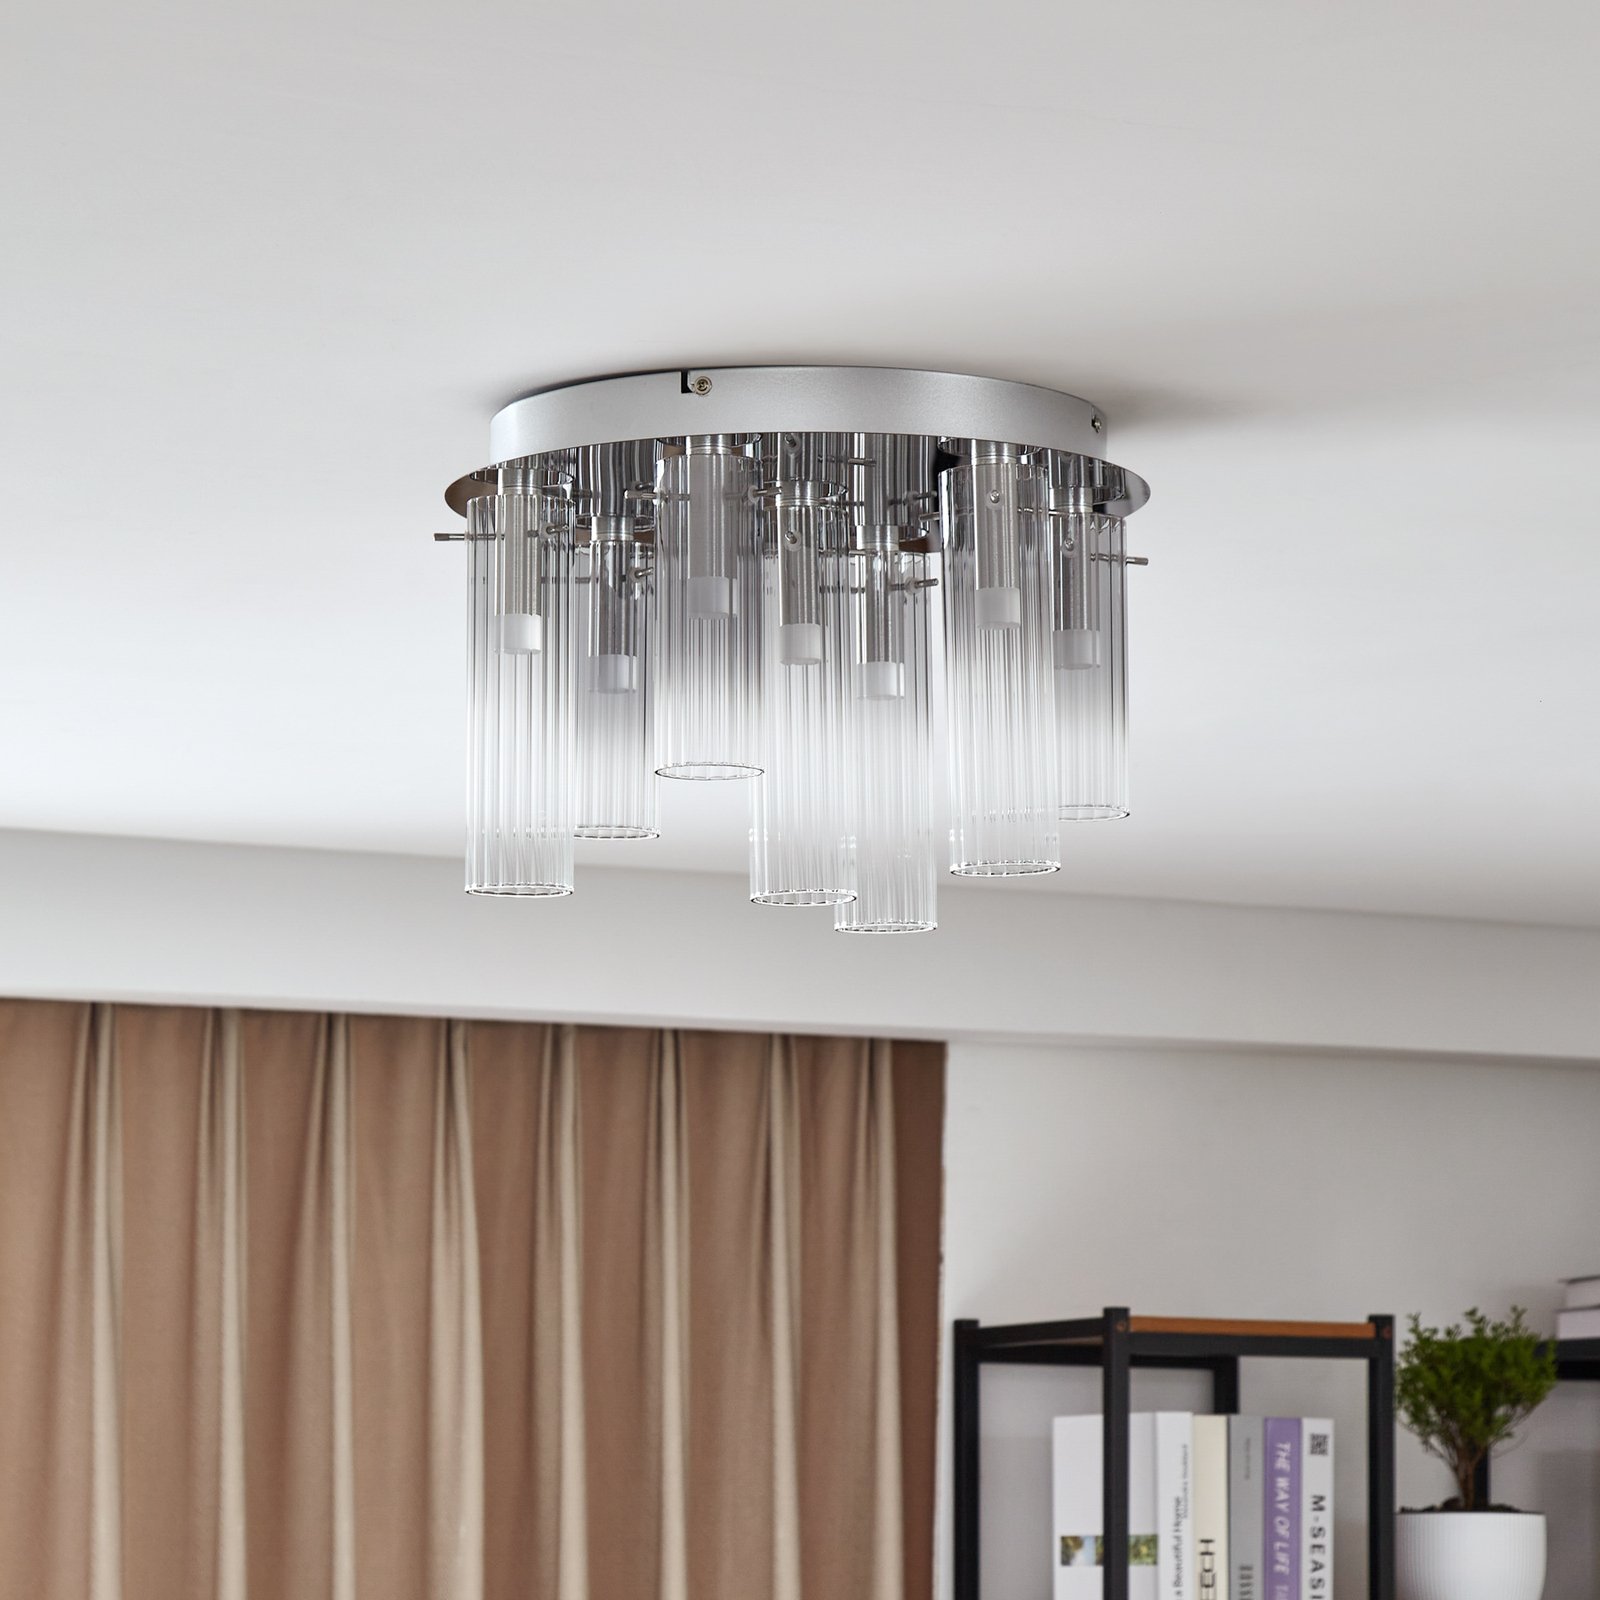 Lucande Korvitha LED ceiling light glass shades, 7-bulb